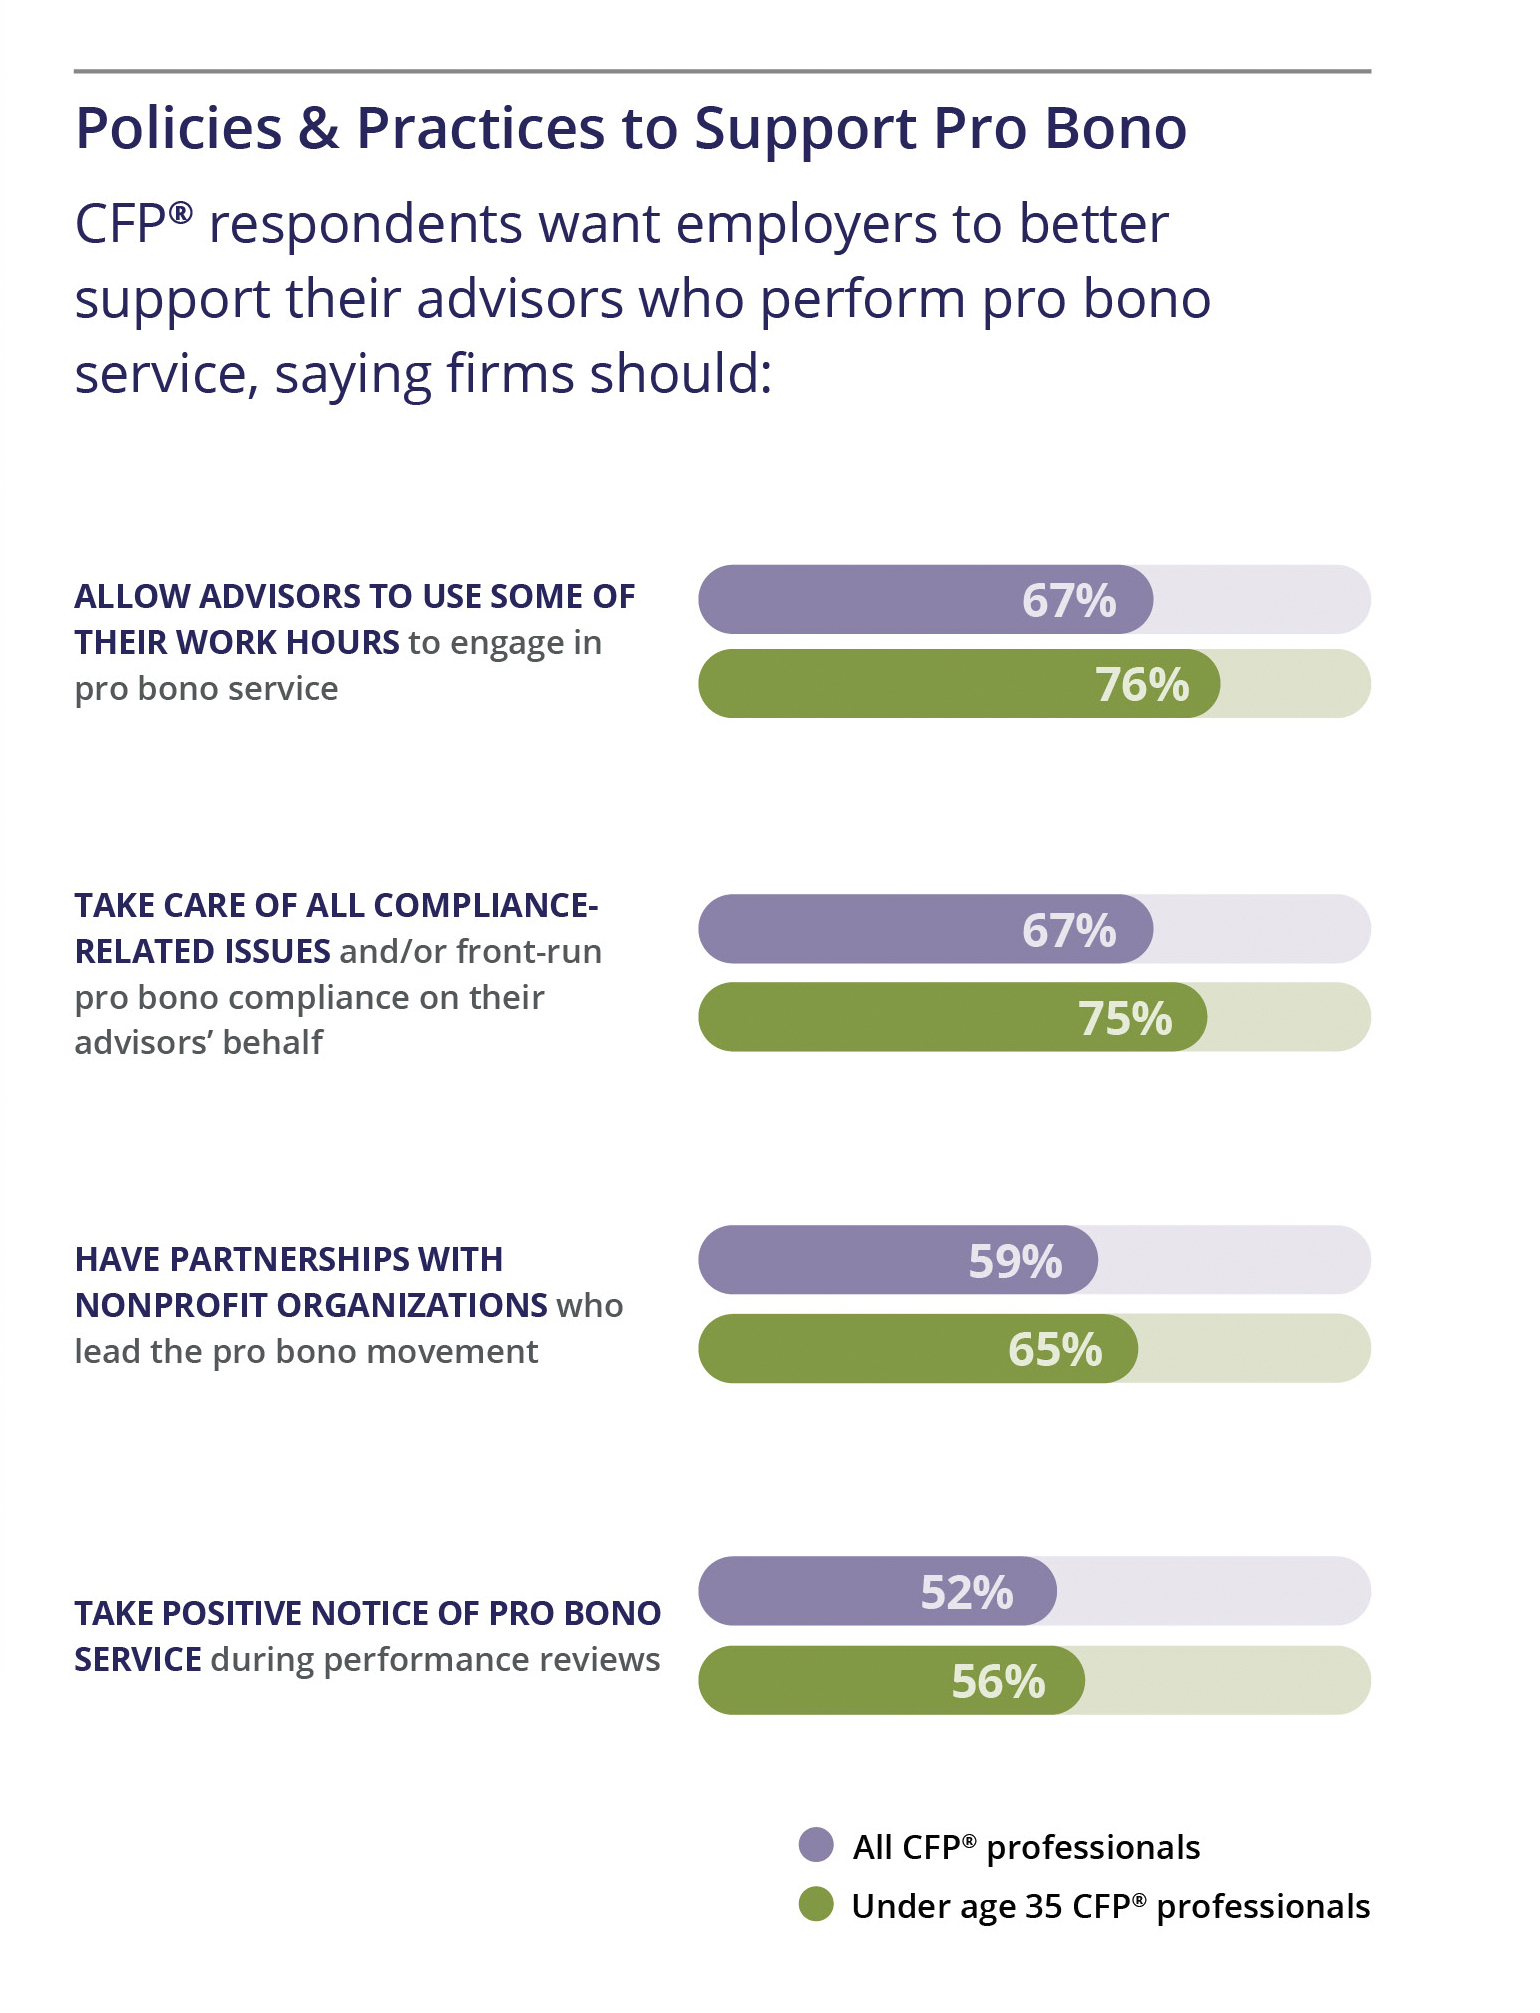 FFP Pro Bono survey